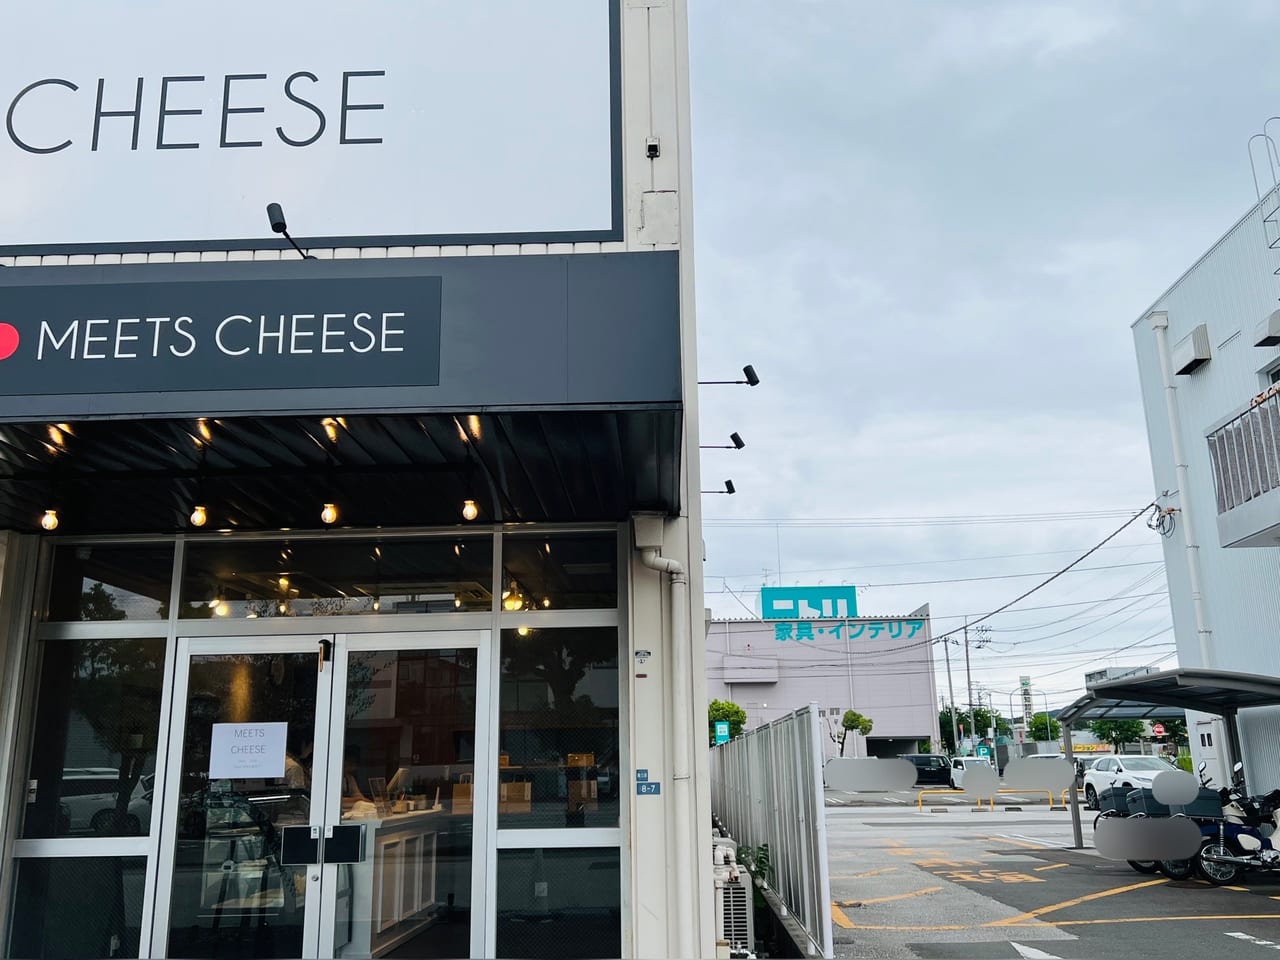 高知市南久保にオープンしたチーズケーキ専門店「MEETS CHEESE」とその向こうに見える「ニトリ 高知店」